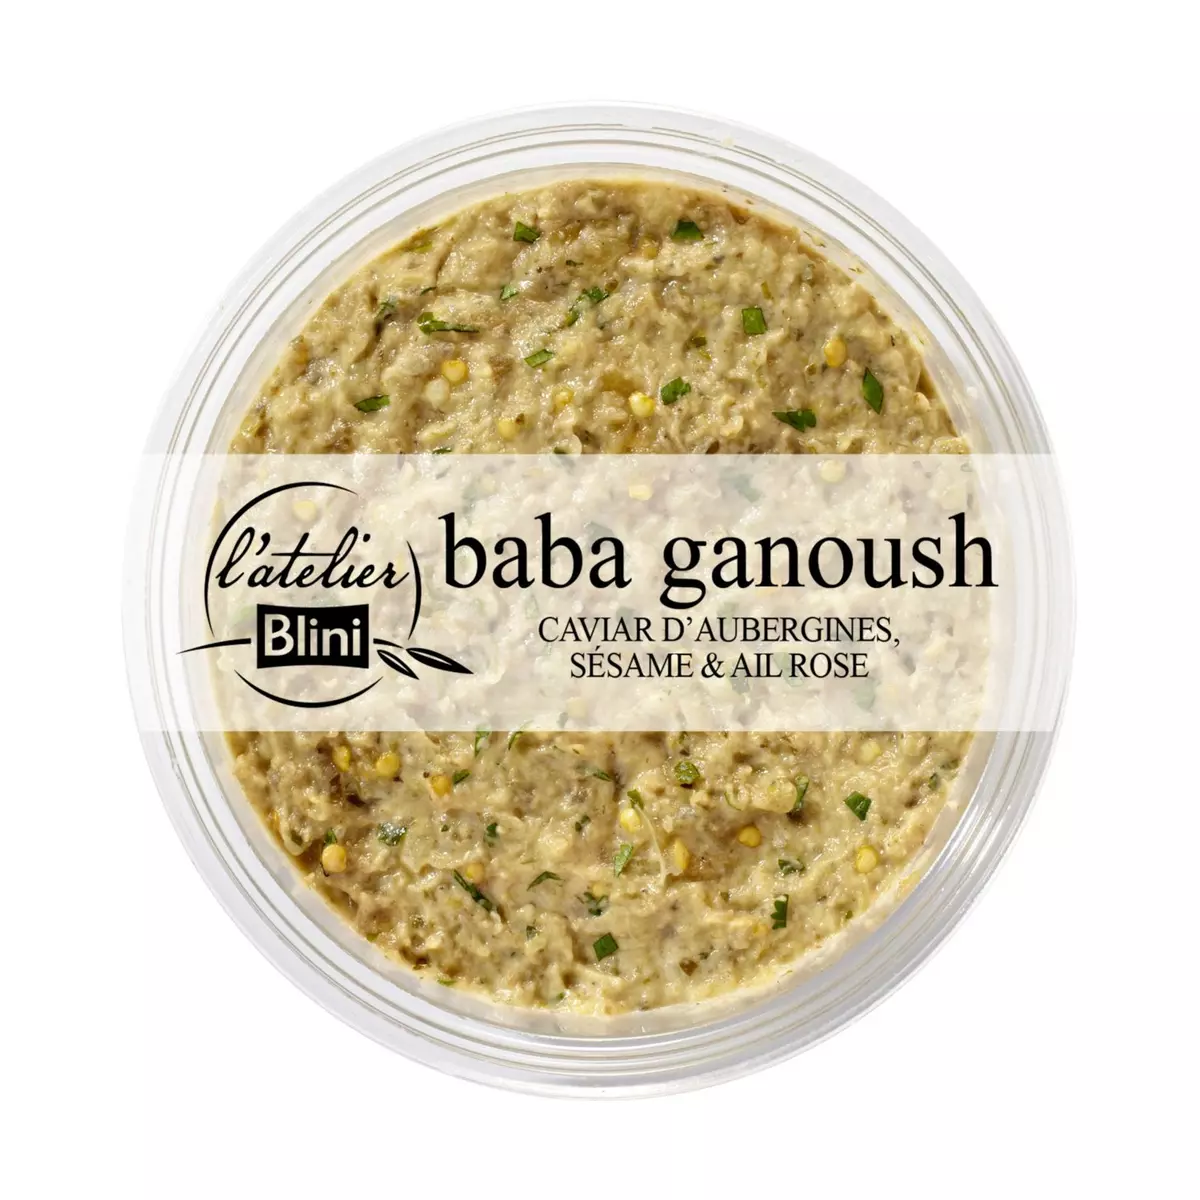 L'ATELIER BLINI Baba ganoush caviar d'aubergines sésame et ail rose 165g